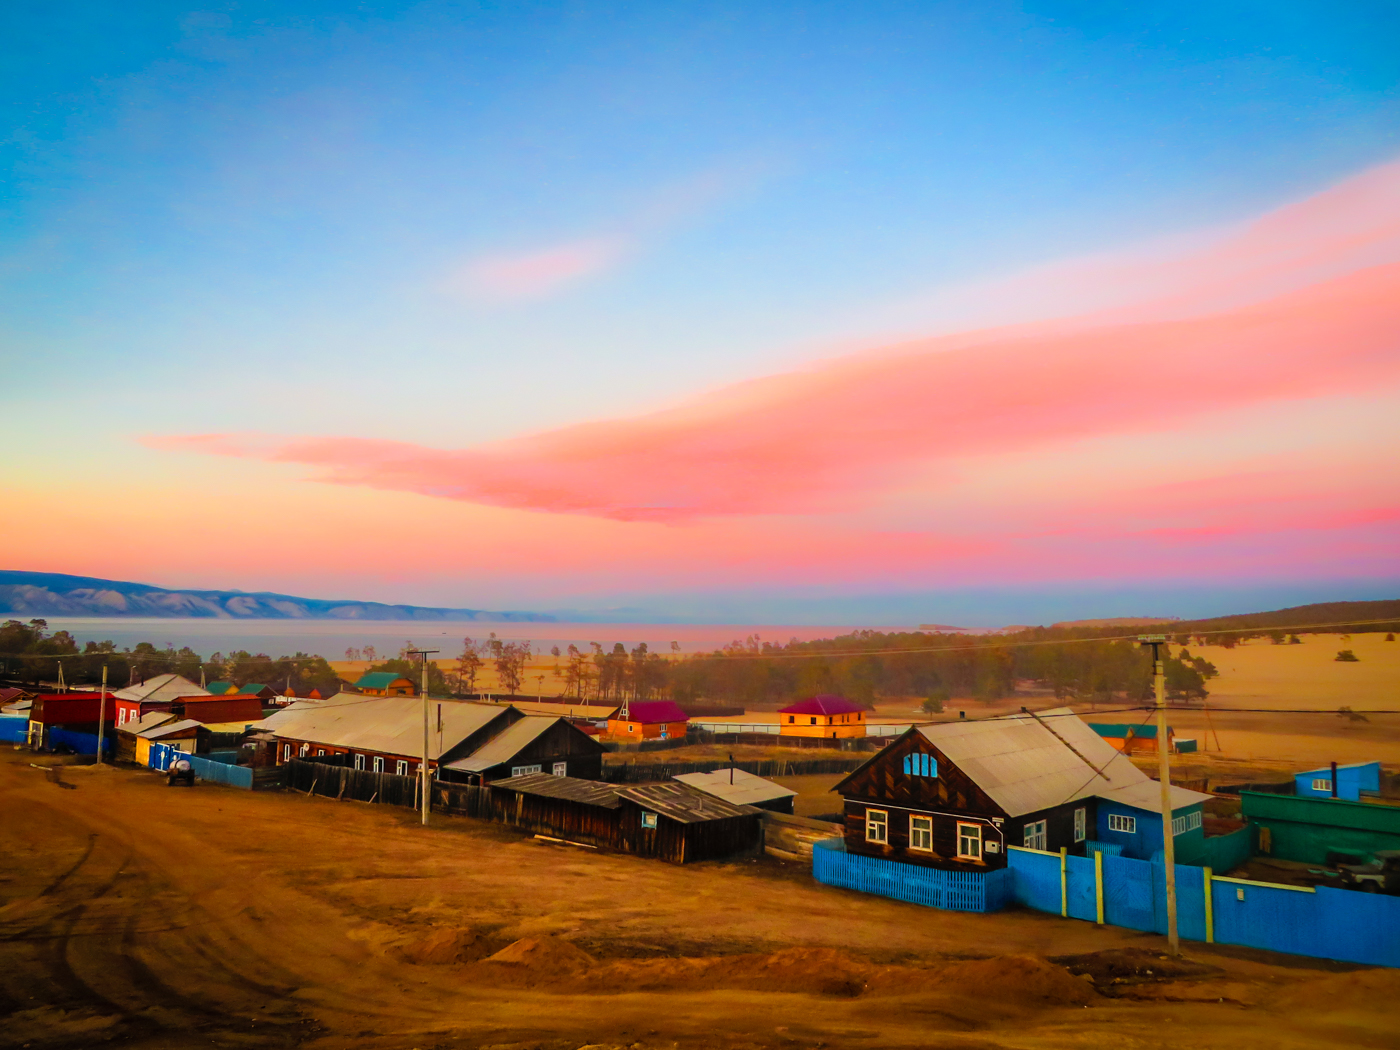 Uma vila tradicional inteira em chão de terra batida em Irkutski na Russia, perto do Lago Baikal, com o céu todo rosa e azul